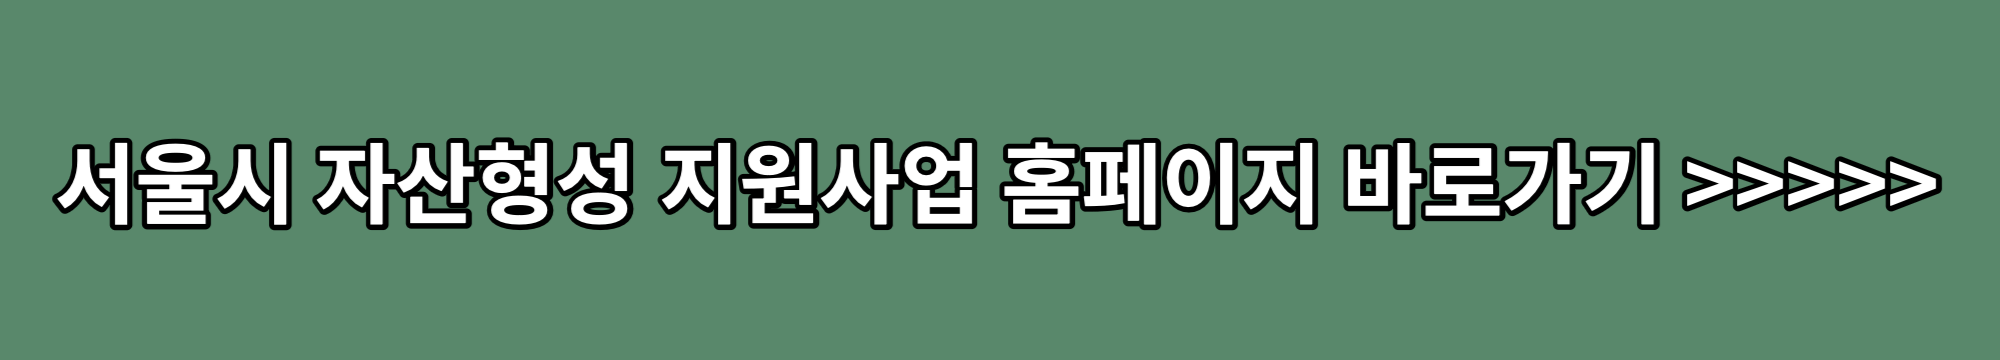 서울시-자산형성-지원사업-홈페이지